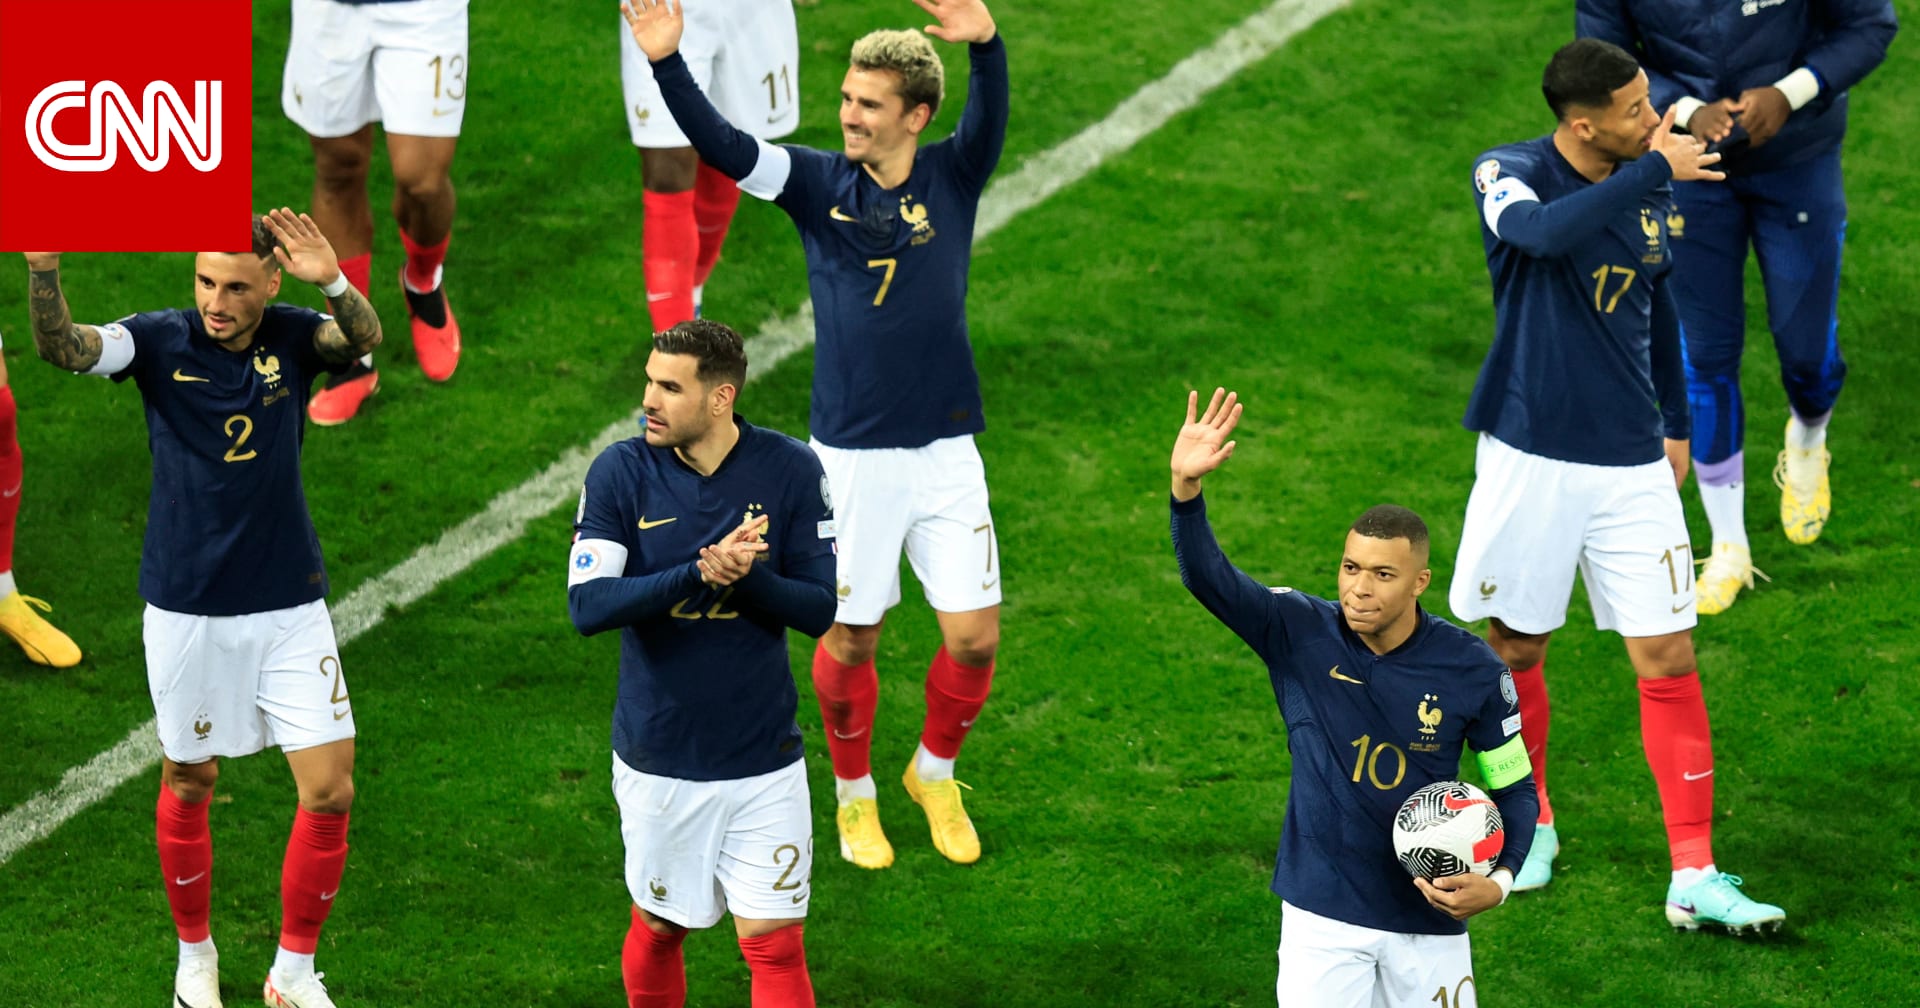 منتخب فرنسا يحقق أكبر فوز على مر تاريخه.. كم بلغت النتيجة؟